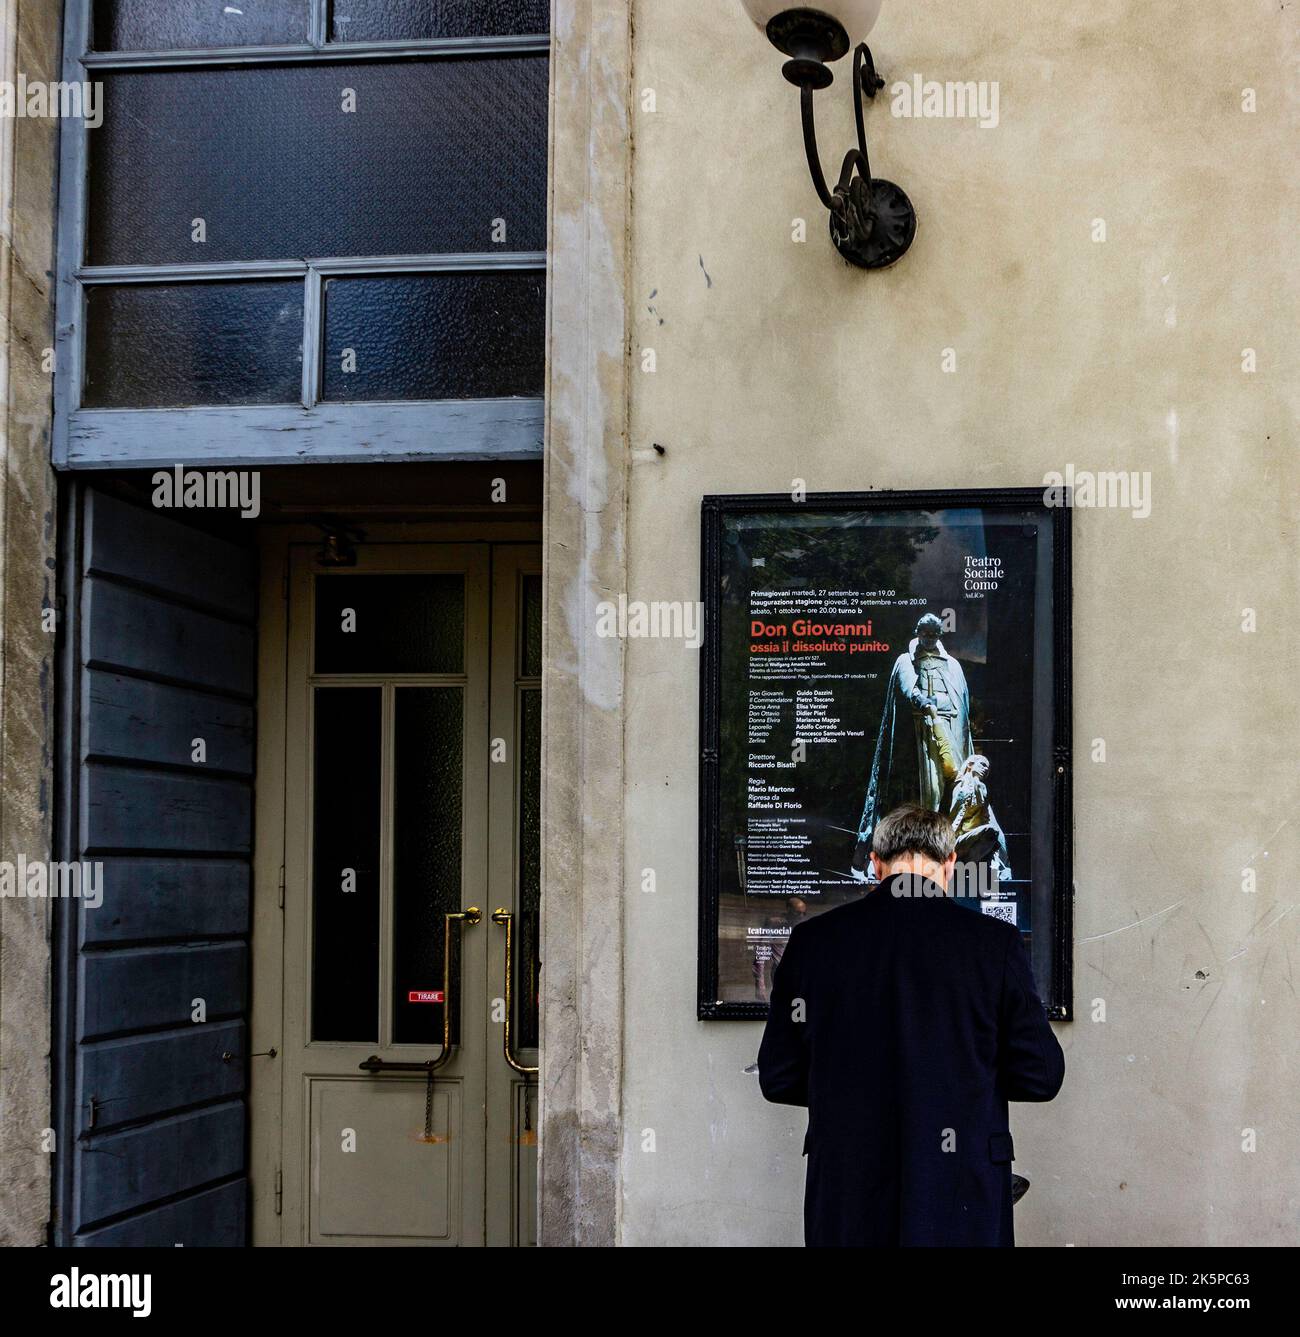 Un uomo che si trova fuori dal teatro dell'opera, il Teatro sociale di Como, a Como. Il poster è per una rappresentazione di Don Giovanni di Mozart. Foto Stock